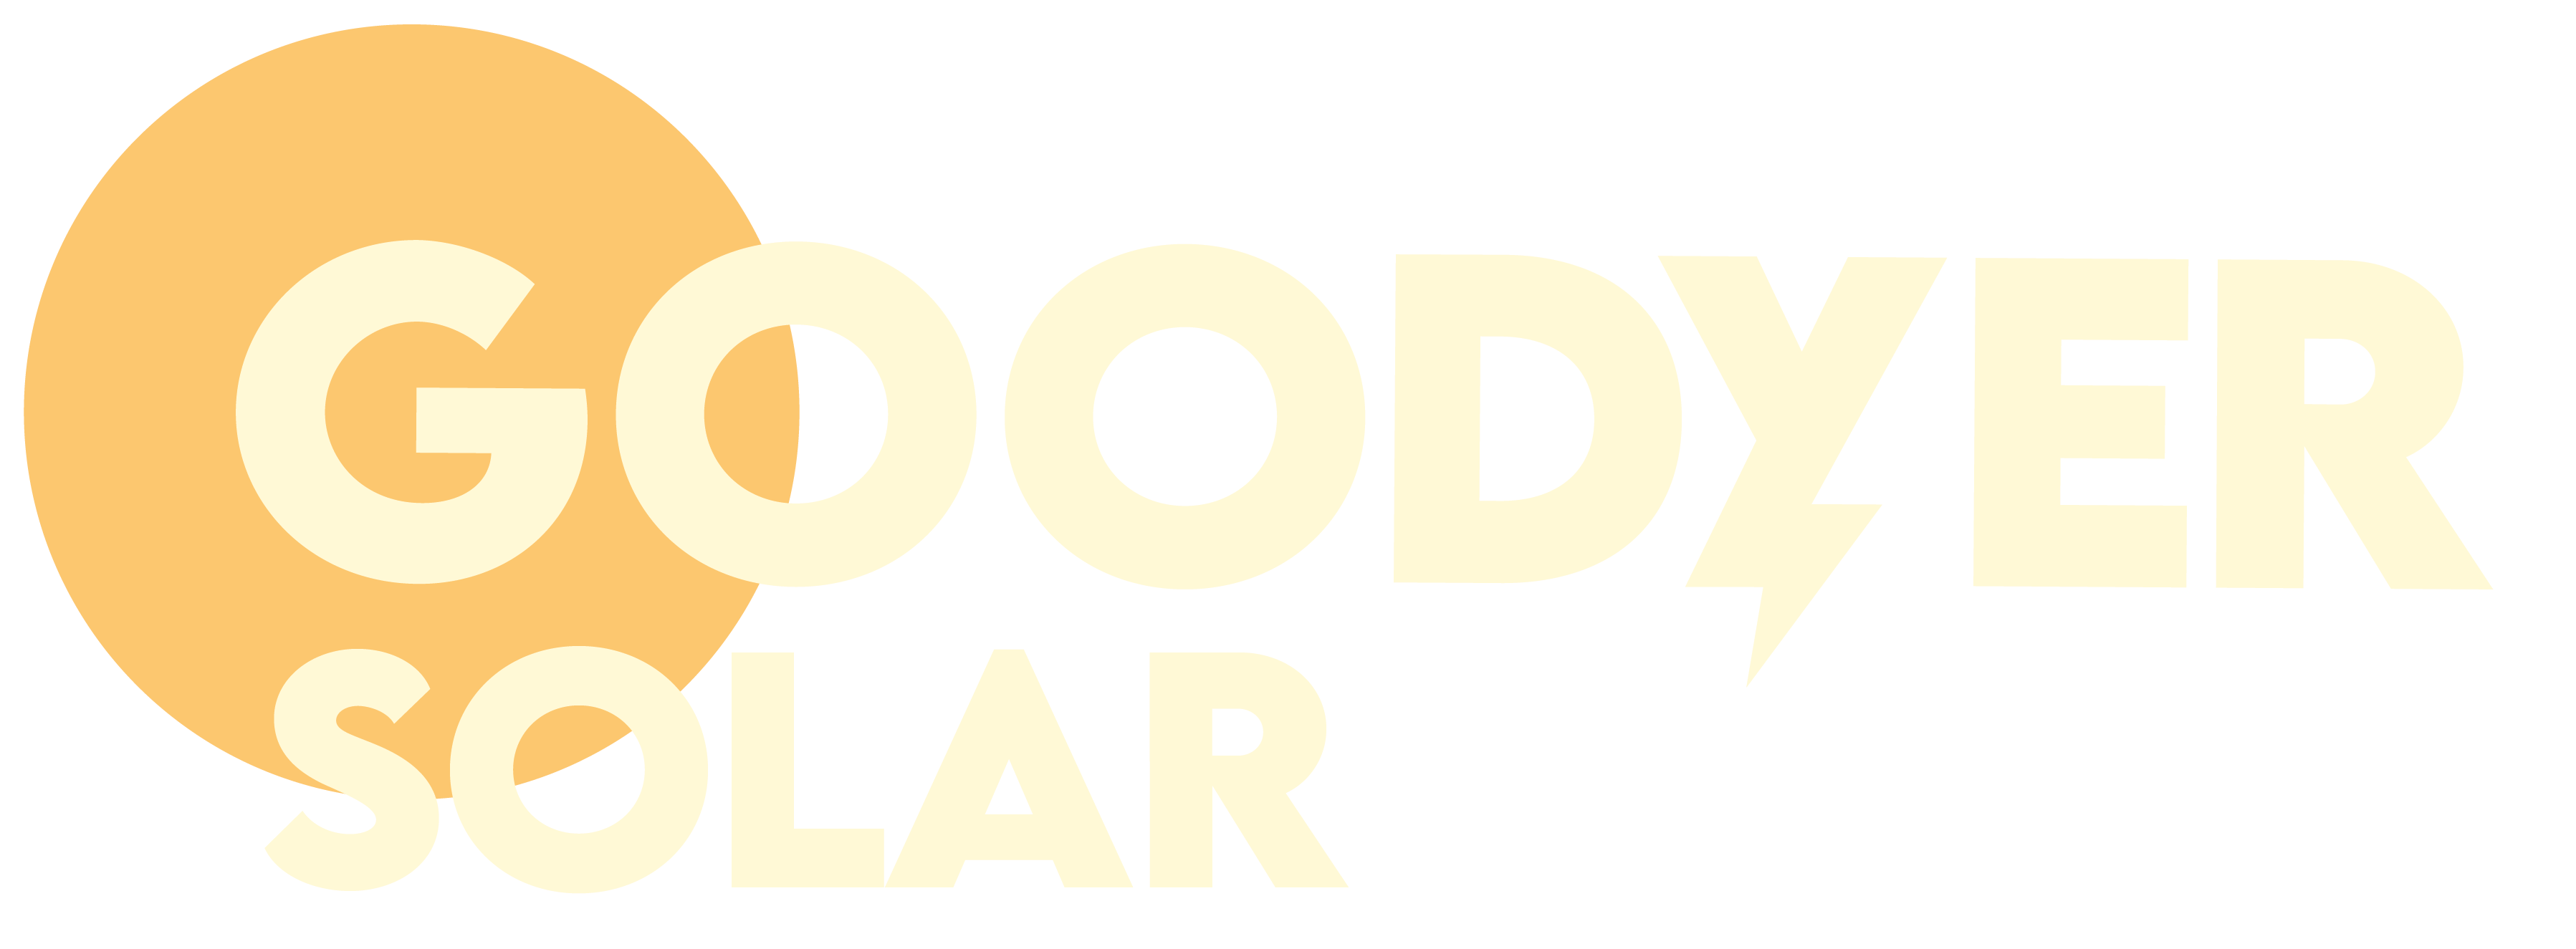 Goodyer-Logo